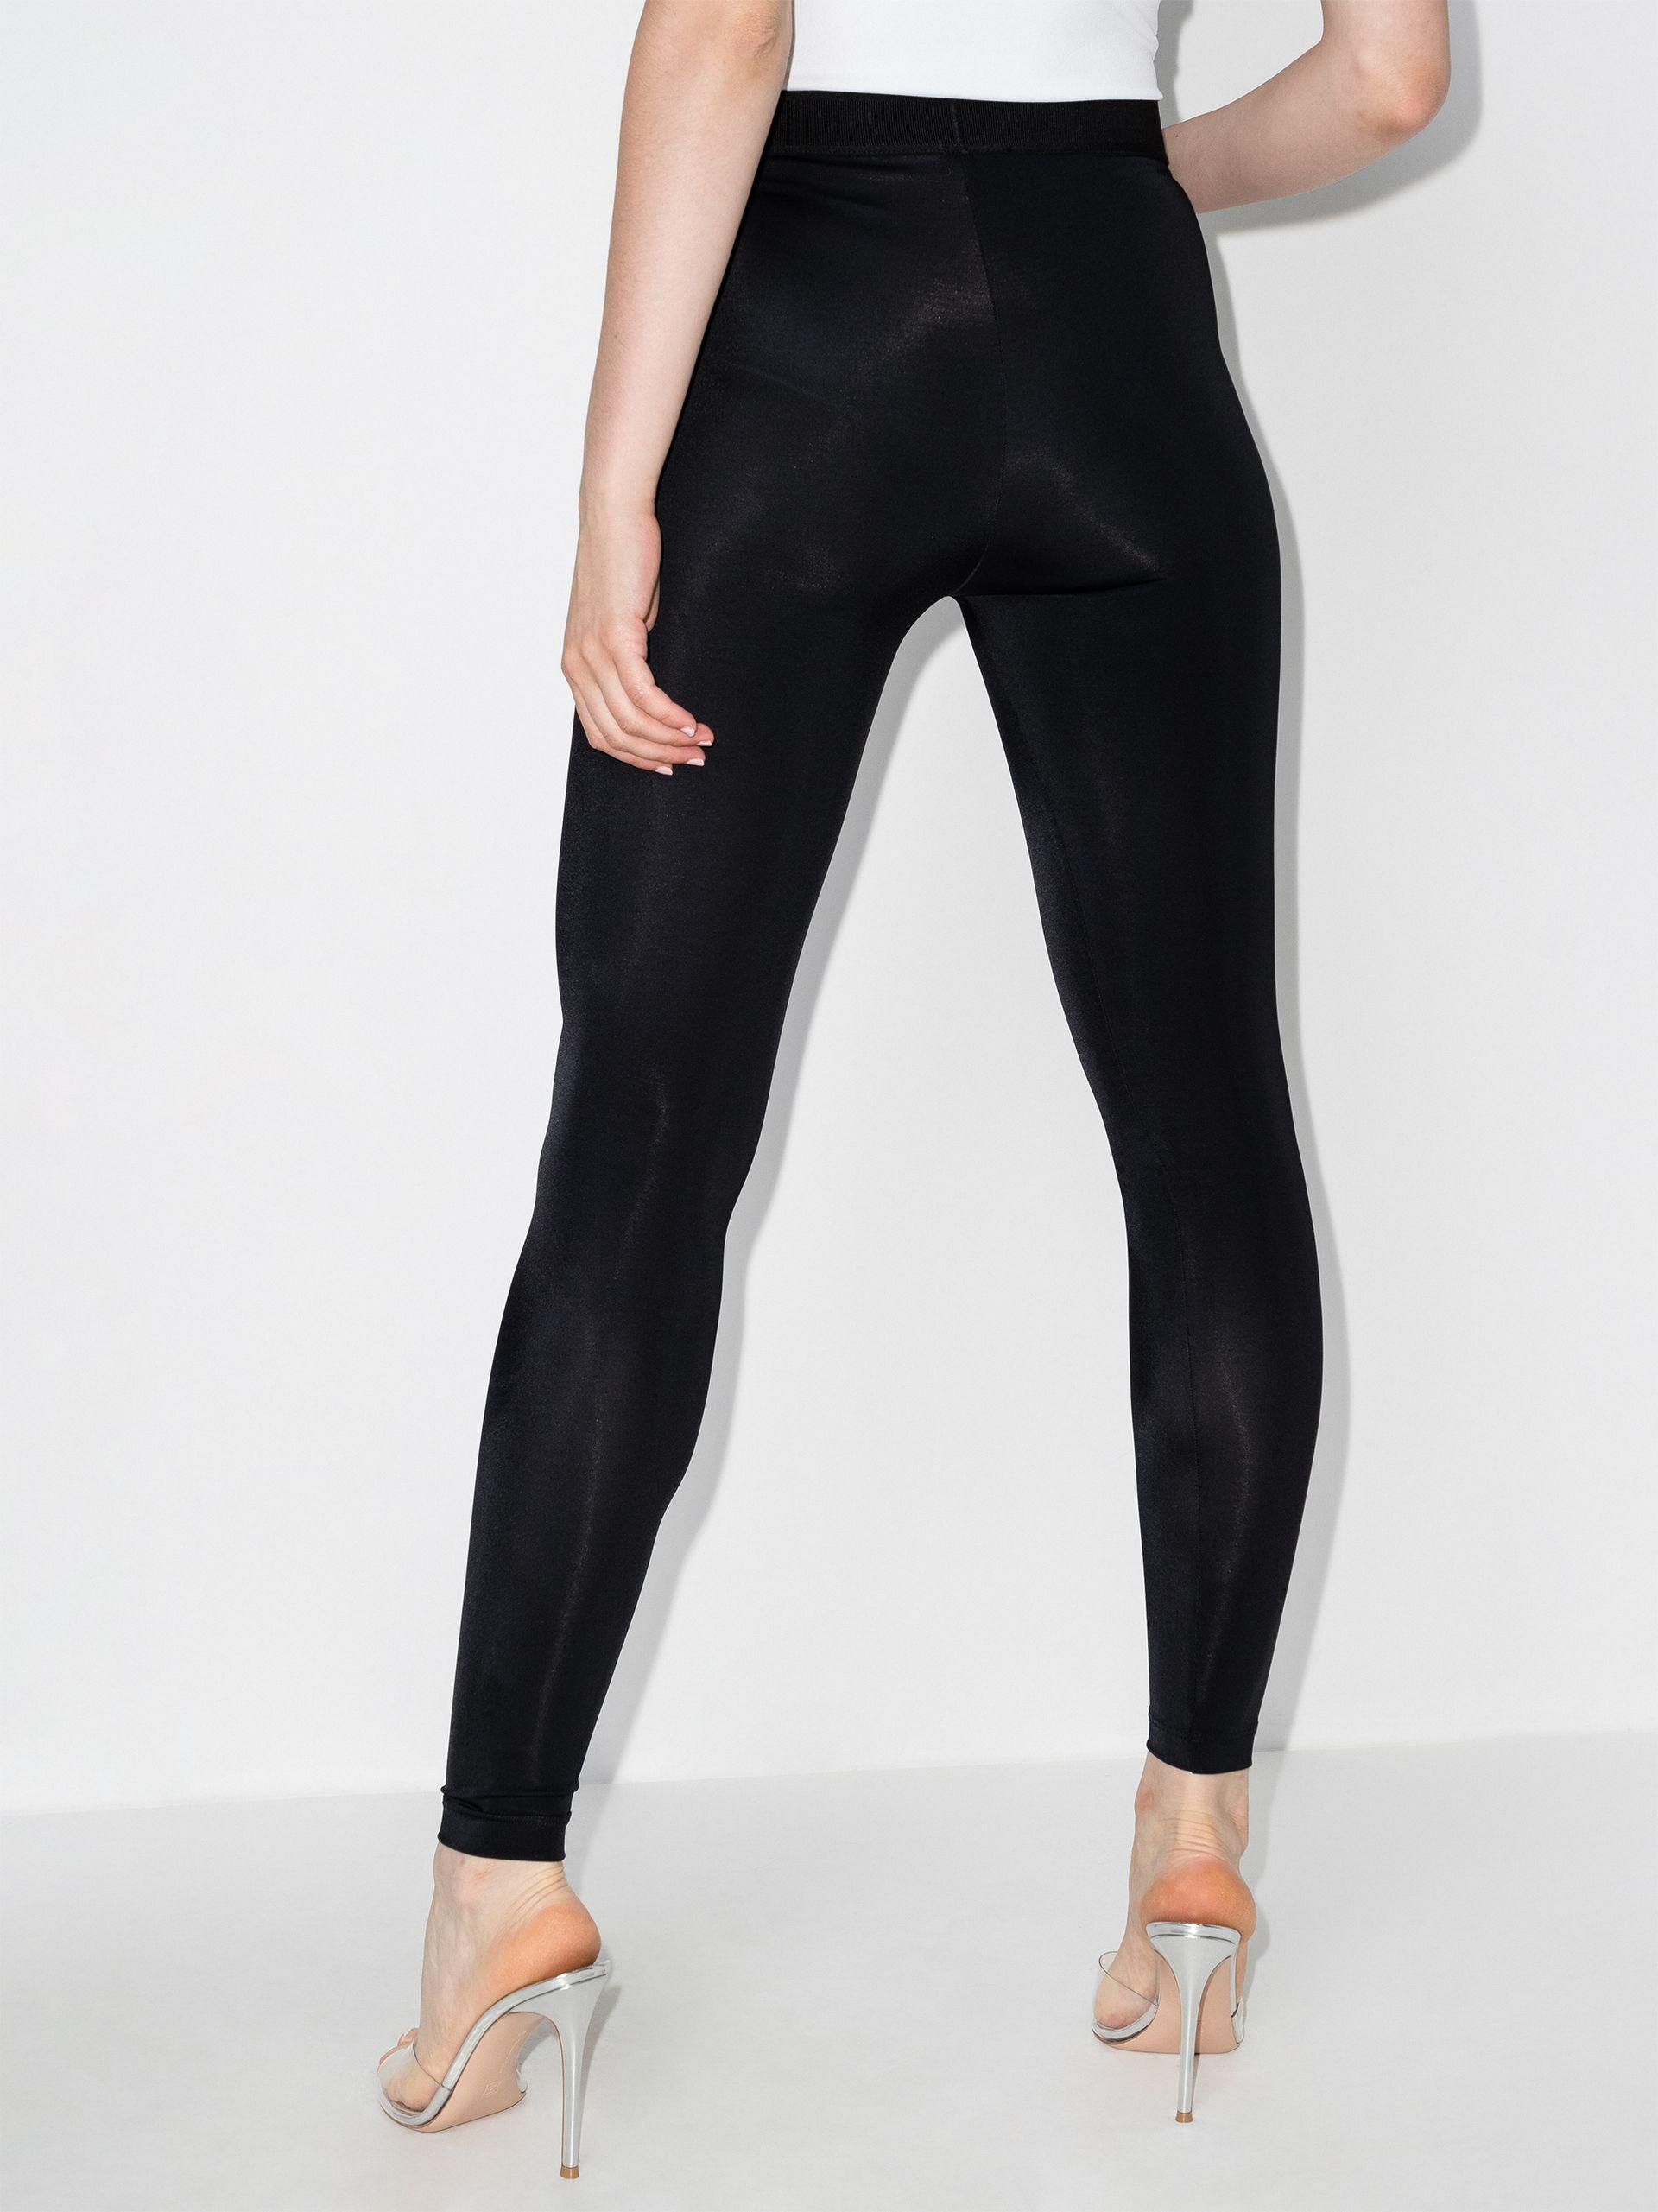 Tom Ford Logo High Waist leggings - Women's - Elastane/polyamide in Black |  Lyst